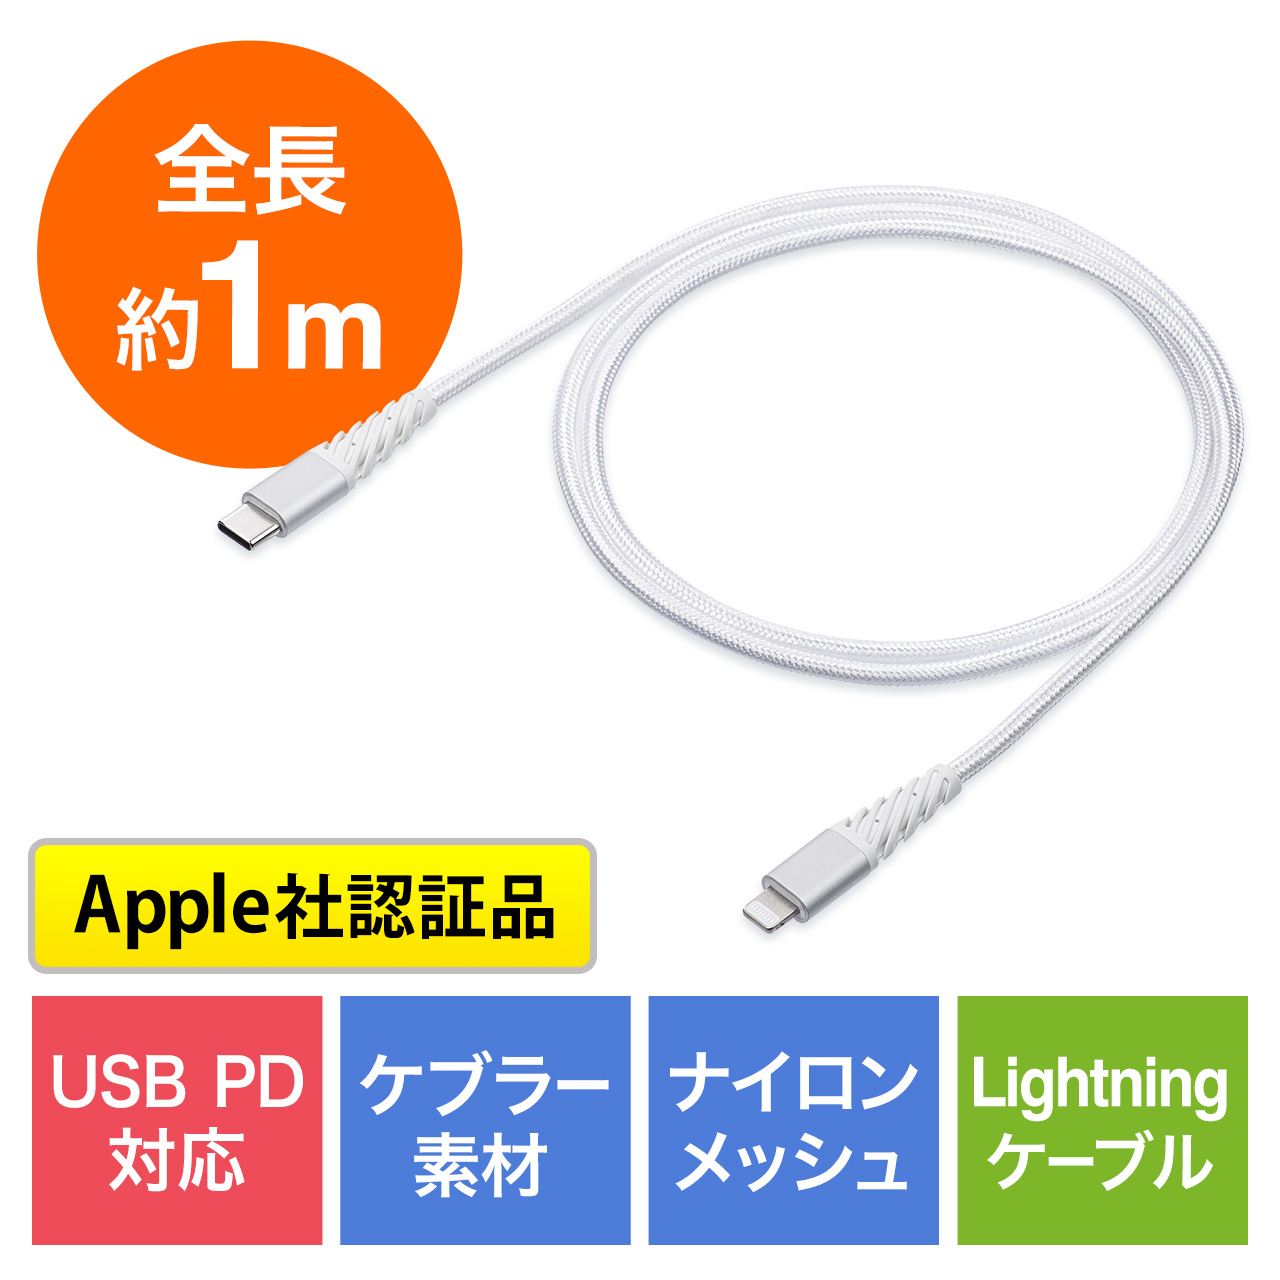 断線しにくい USB Type-C Lightningケーブル 1m 高耐久メッシュ被覆 Apple MFi認証品 USB PD ホワイト  500-IPLM025Wの販売商品 | 通販ならサンワダイレクト